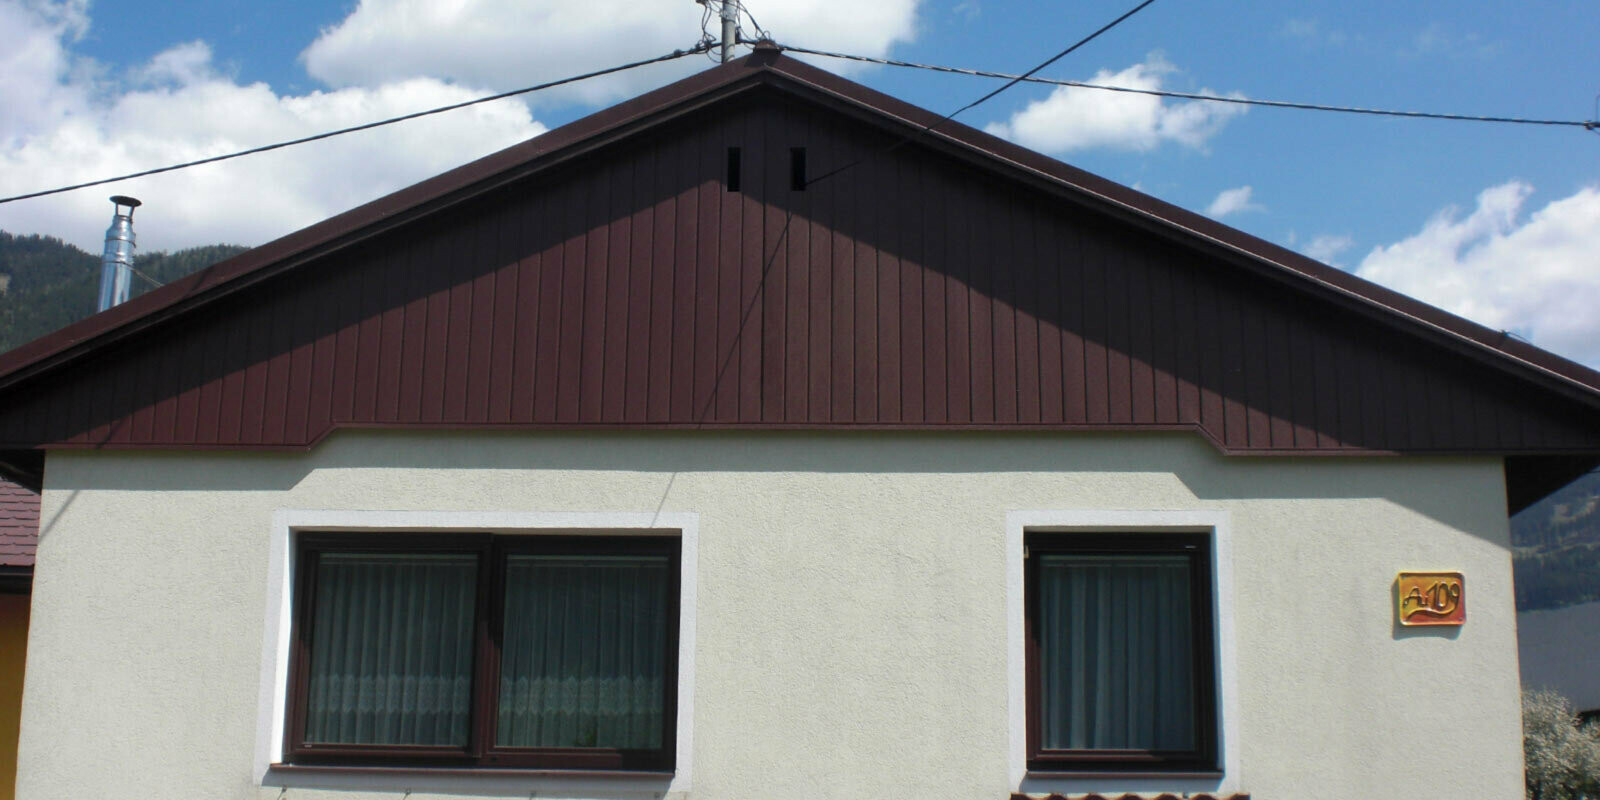 Ristrutturazione della facciata del timpano con doghe di rivestimento PREFA marroni, facciata verde chiaro